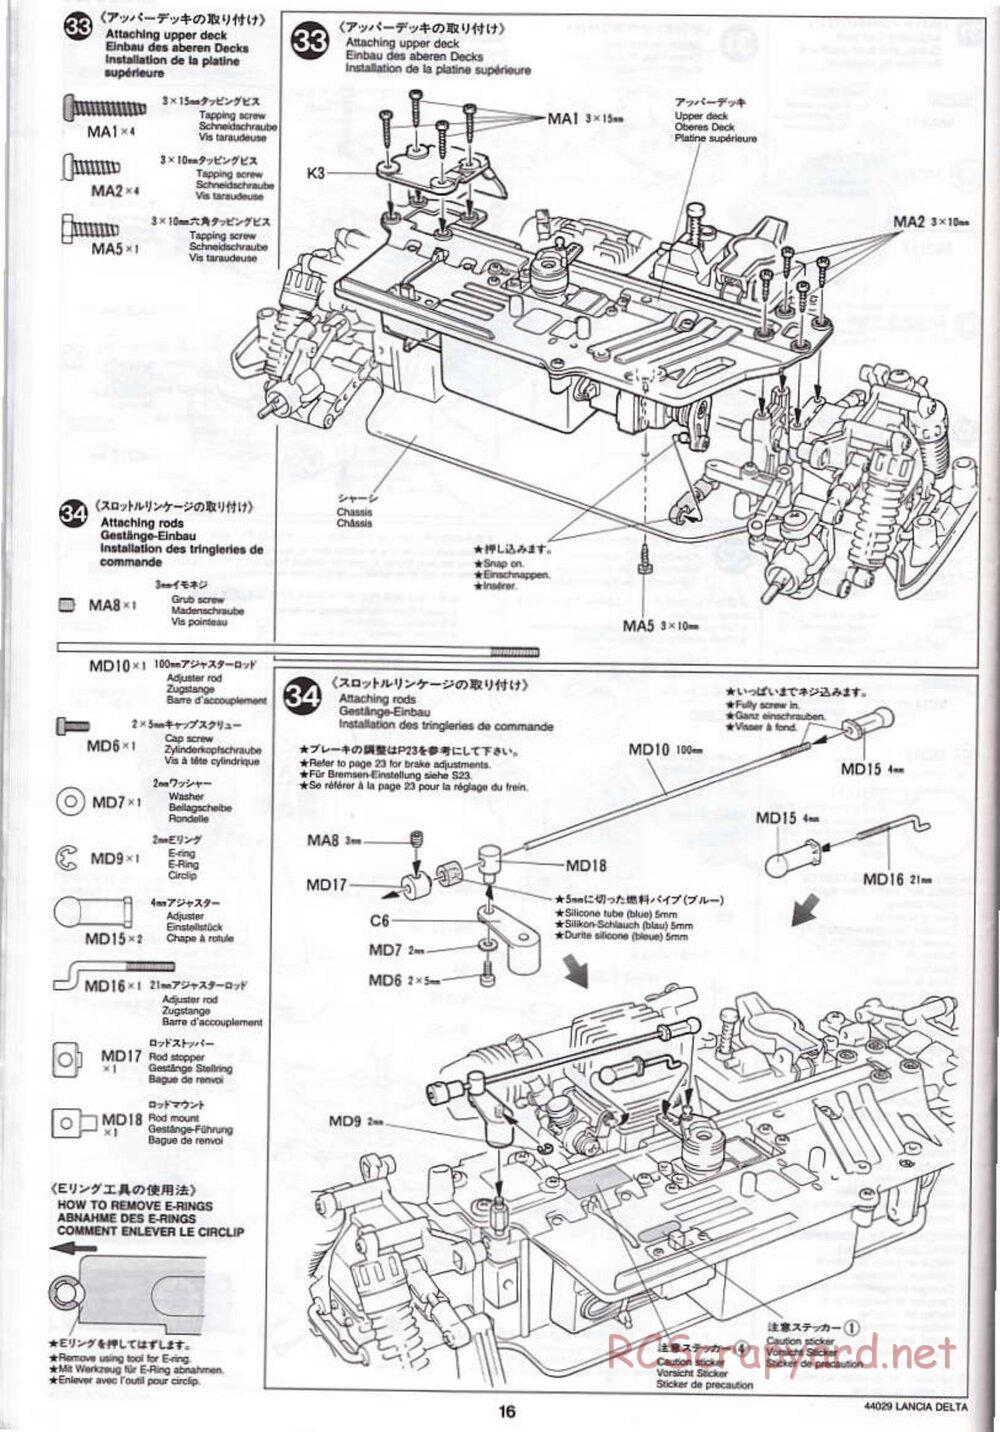 Tamiya - Lancia Delta HF Integrale - TG10 Mk.1 Chassis - Manual - Page 16